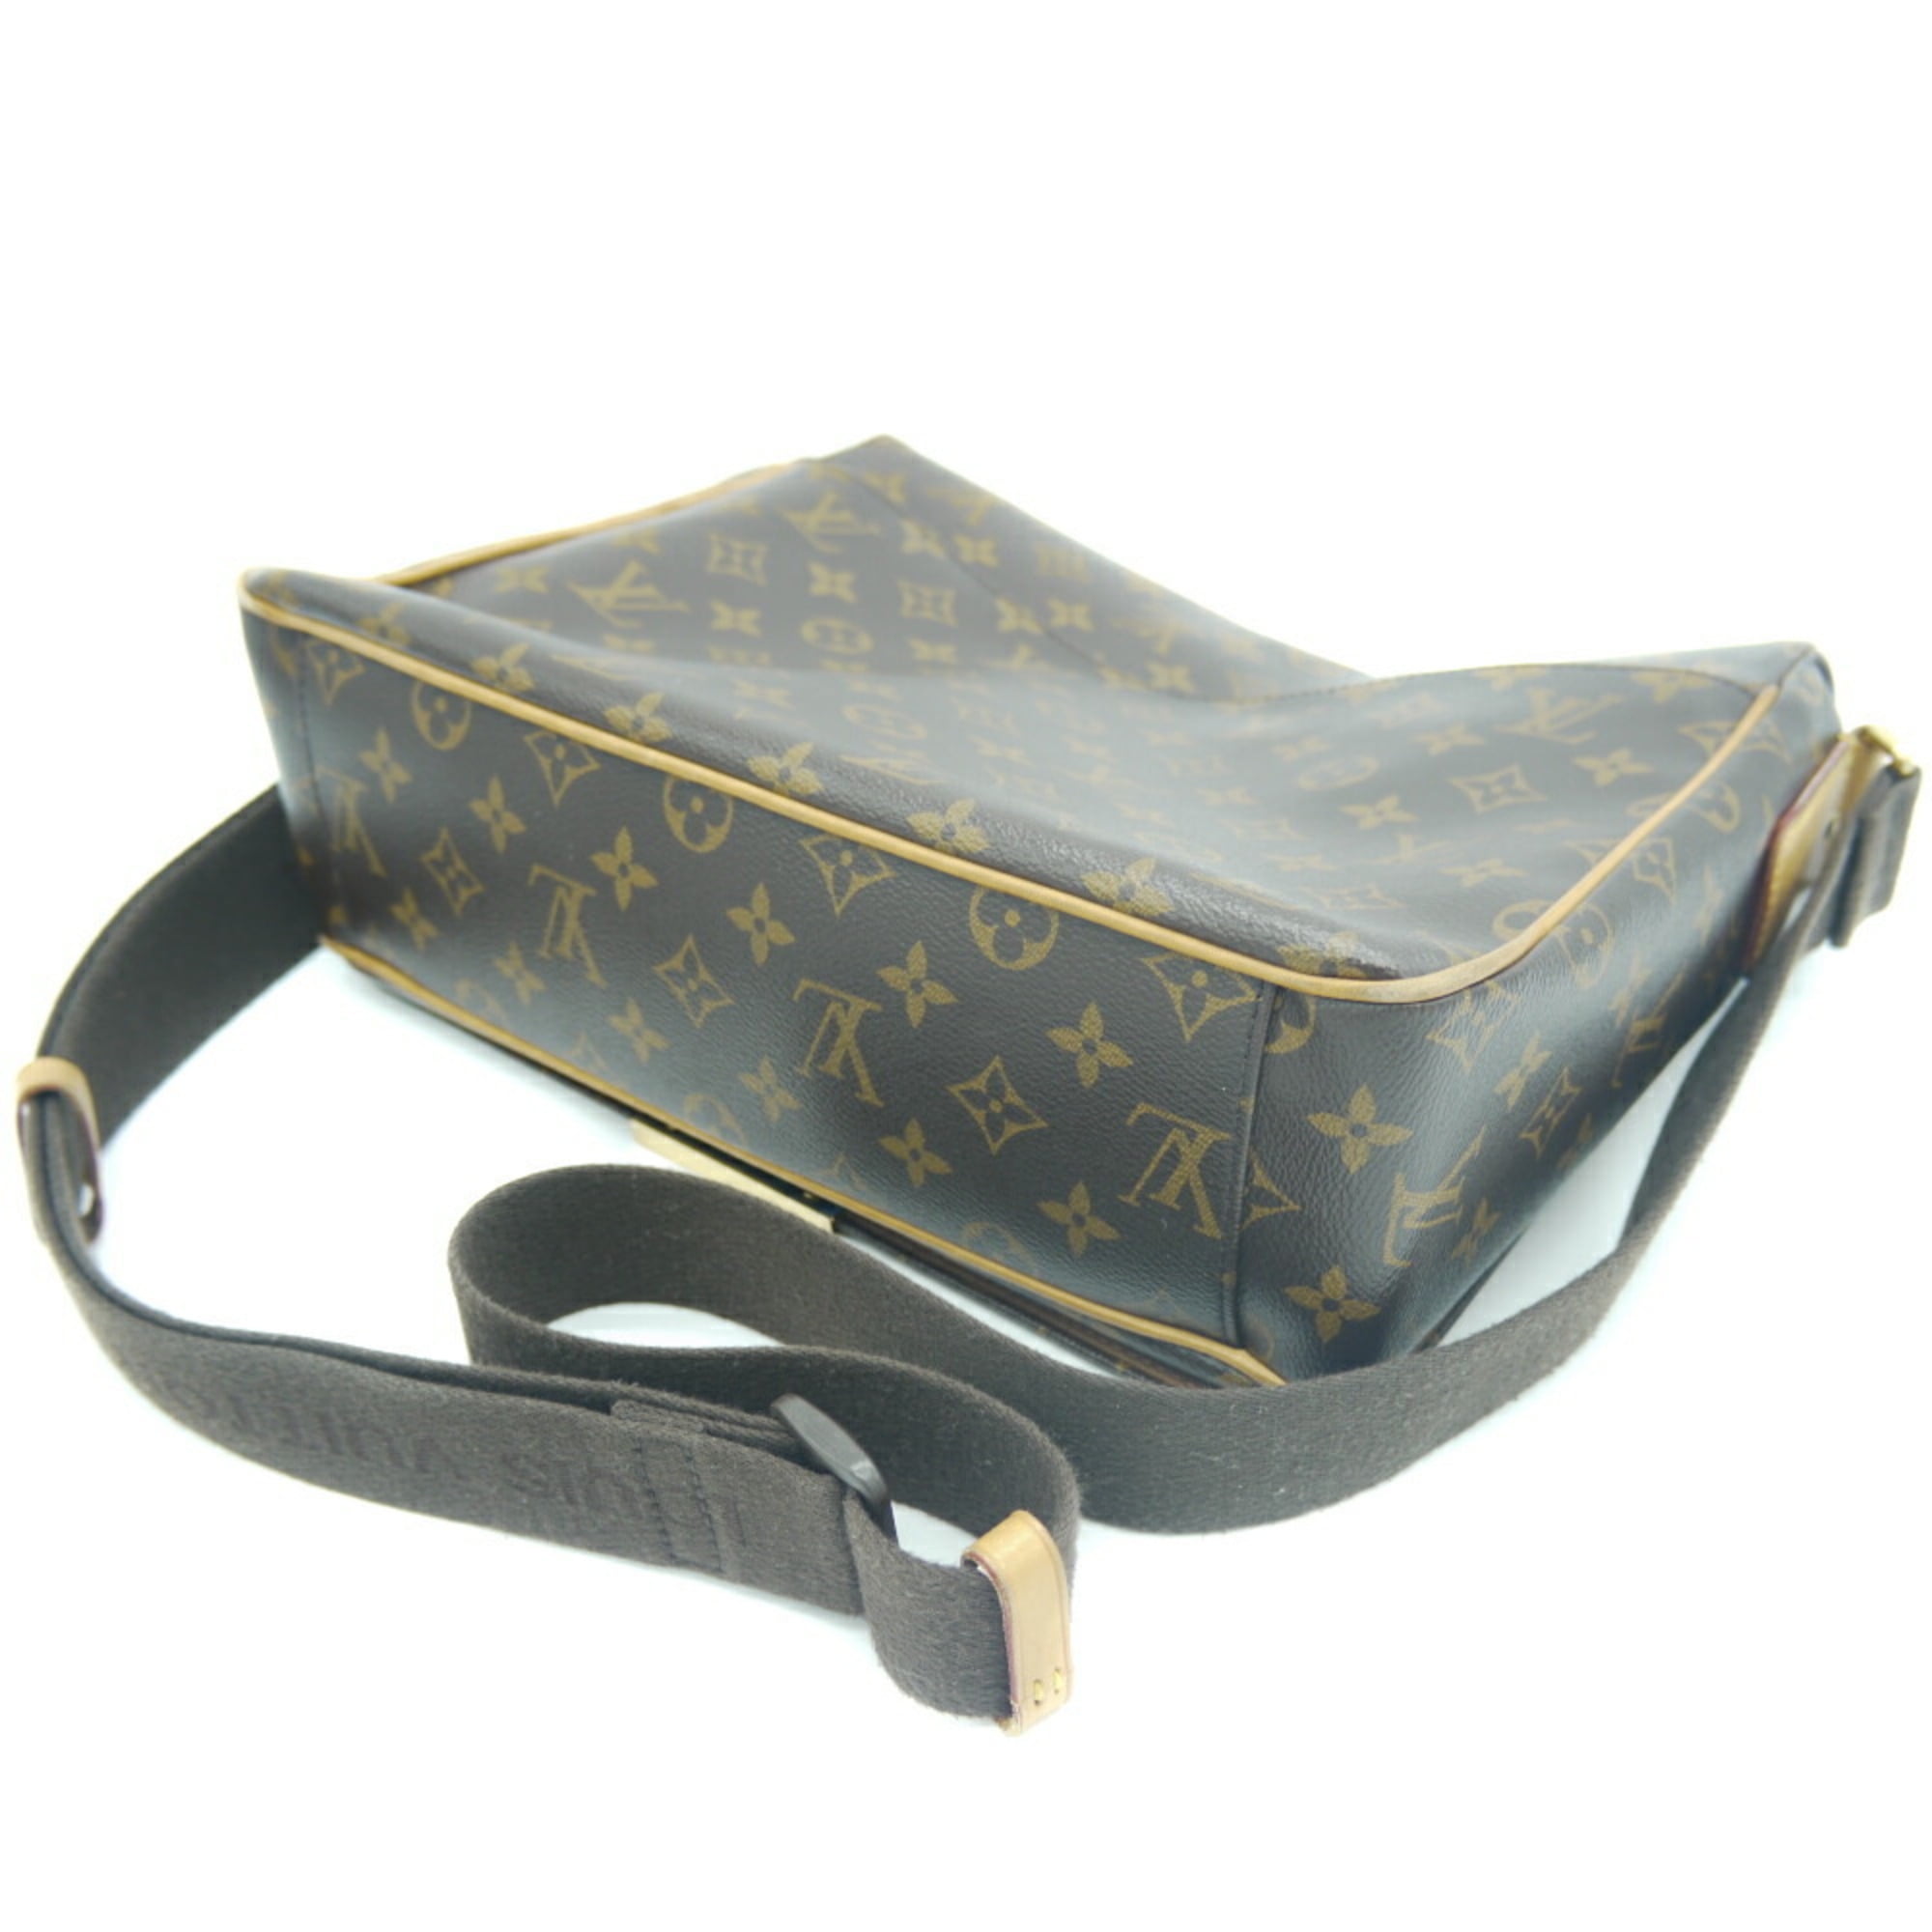 Authenticated used Louis Vuitton Louis Vuitton Valmy mm Monogram Shoulder Bag M40523, Adult Unisex, Size: (HxWxD): 26cm x 33cm x 10cm / 10.23'' x